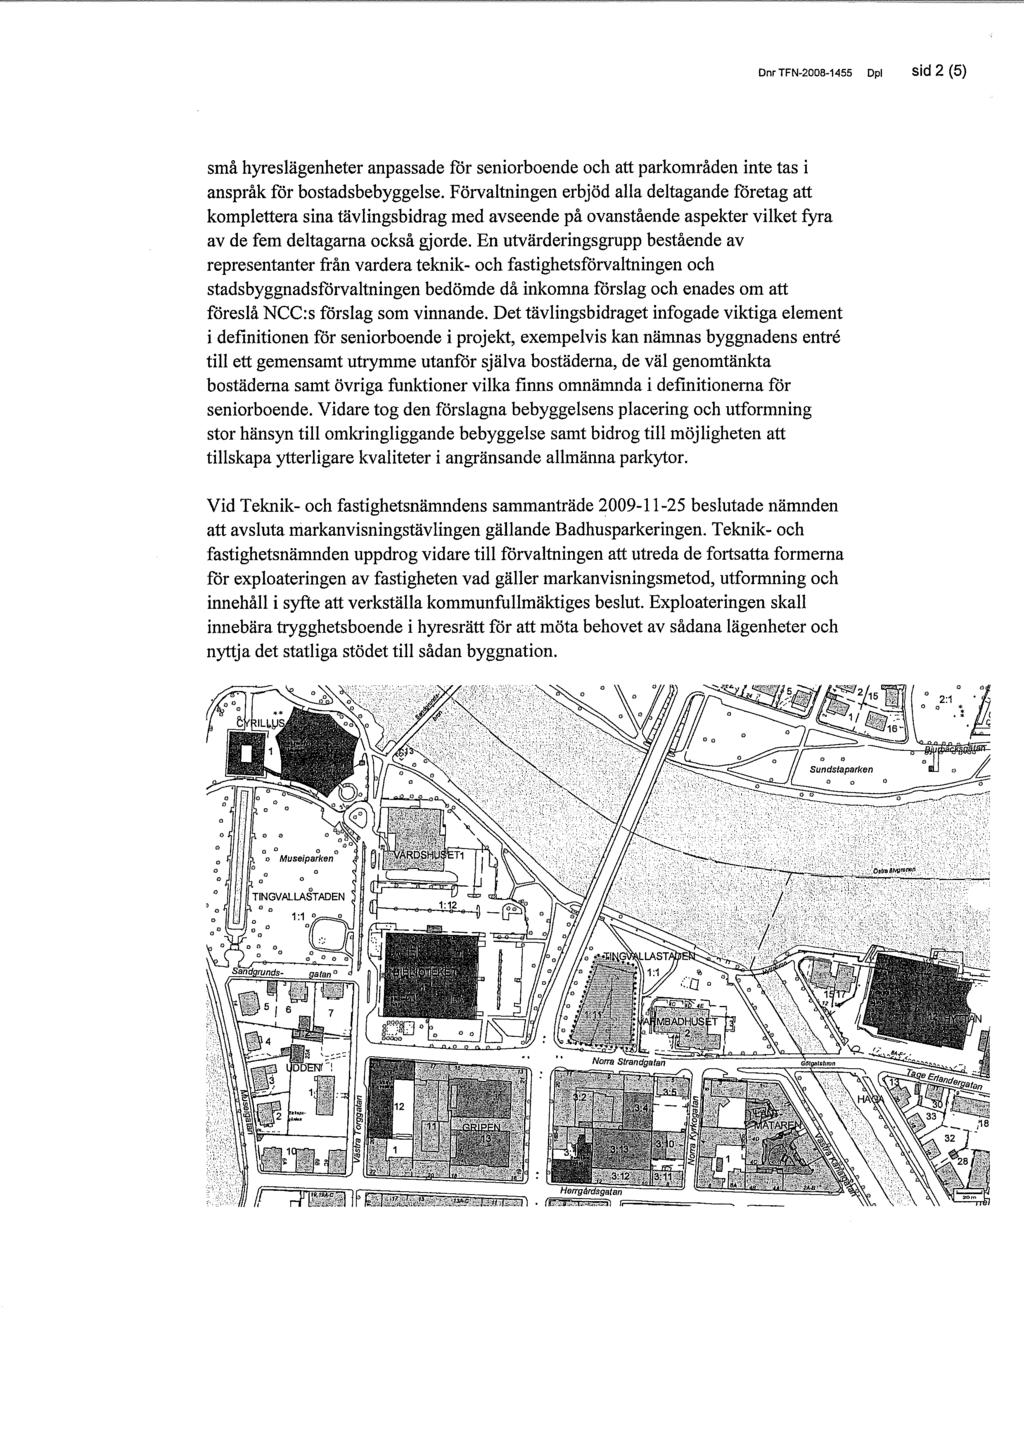 DnrTFN-2008-1455 Dpl sid 2 (6) små hyreslägenheter anpassade för seniorboende och att parkområden inte tas i anspråk för bostadsbebyggelse.